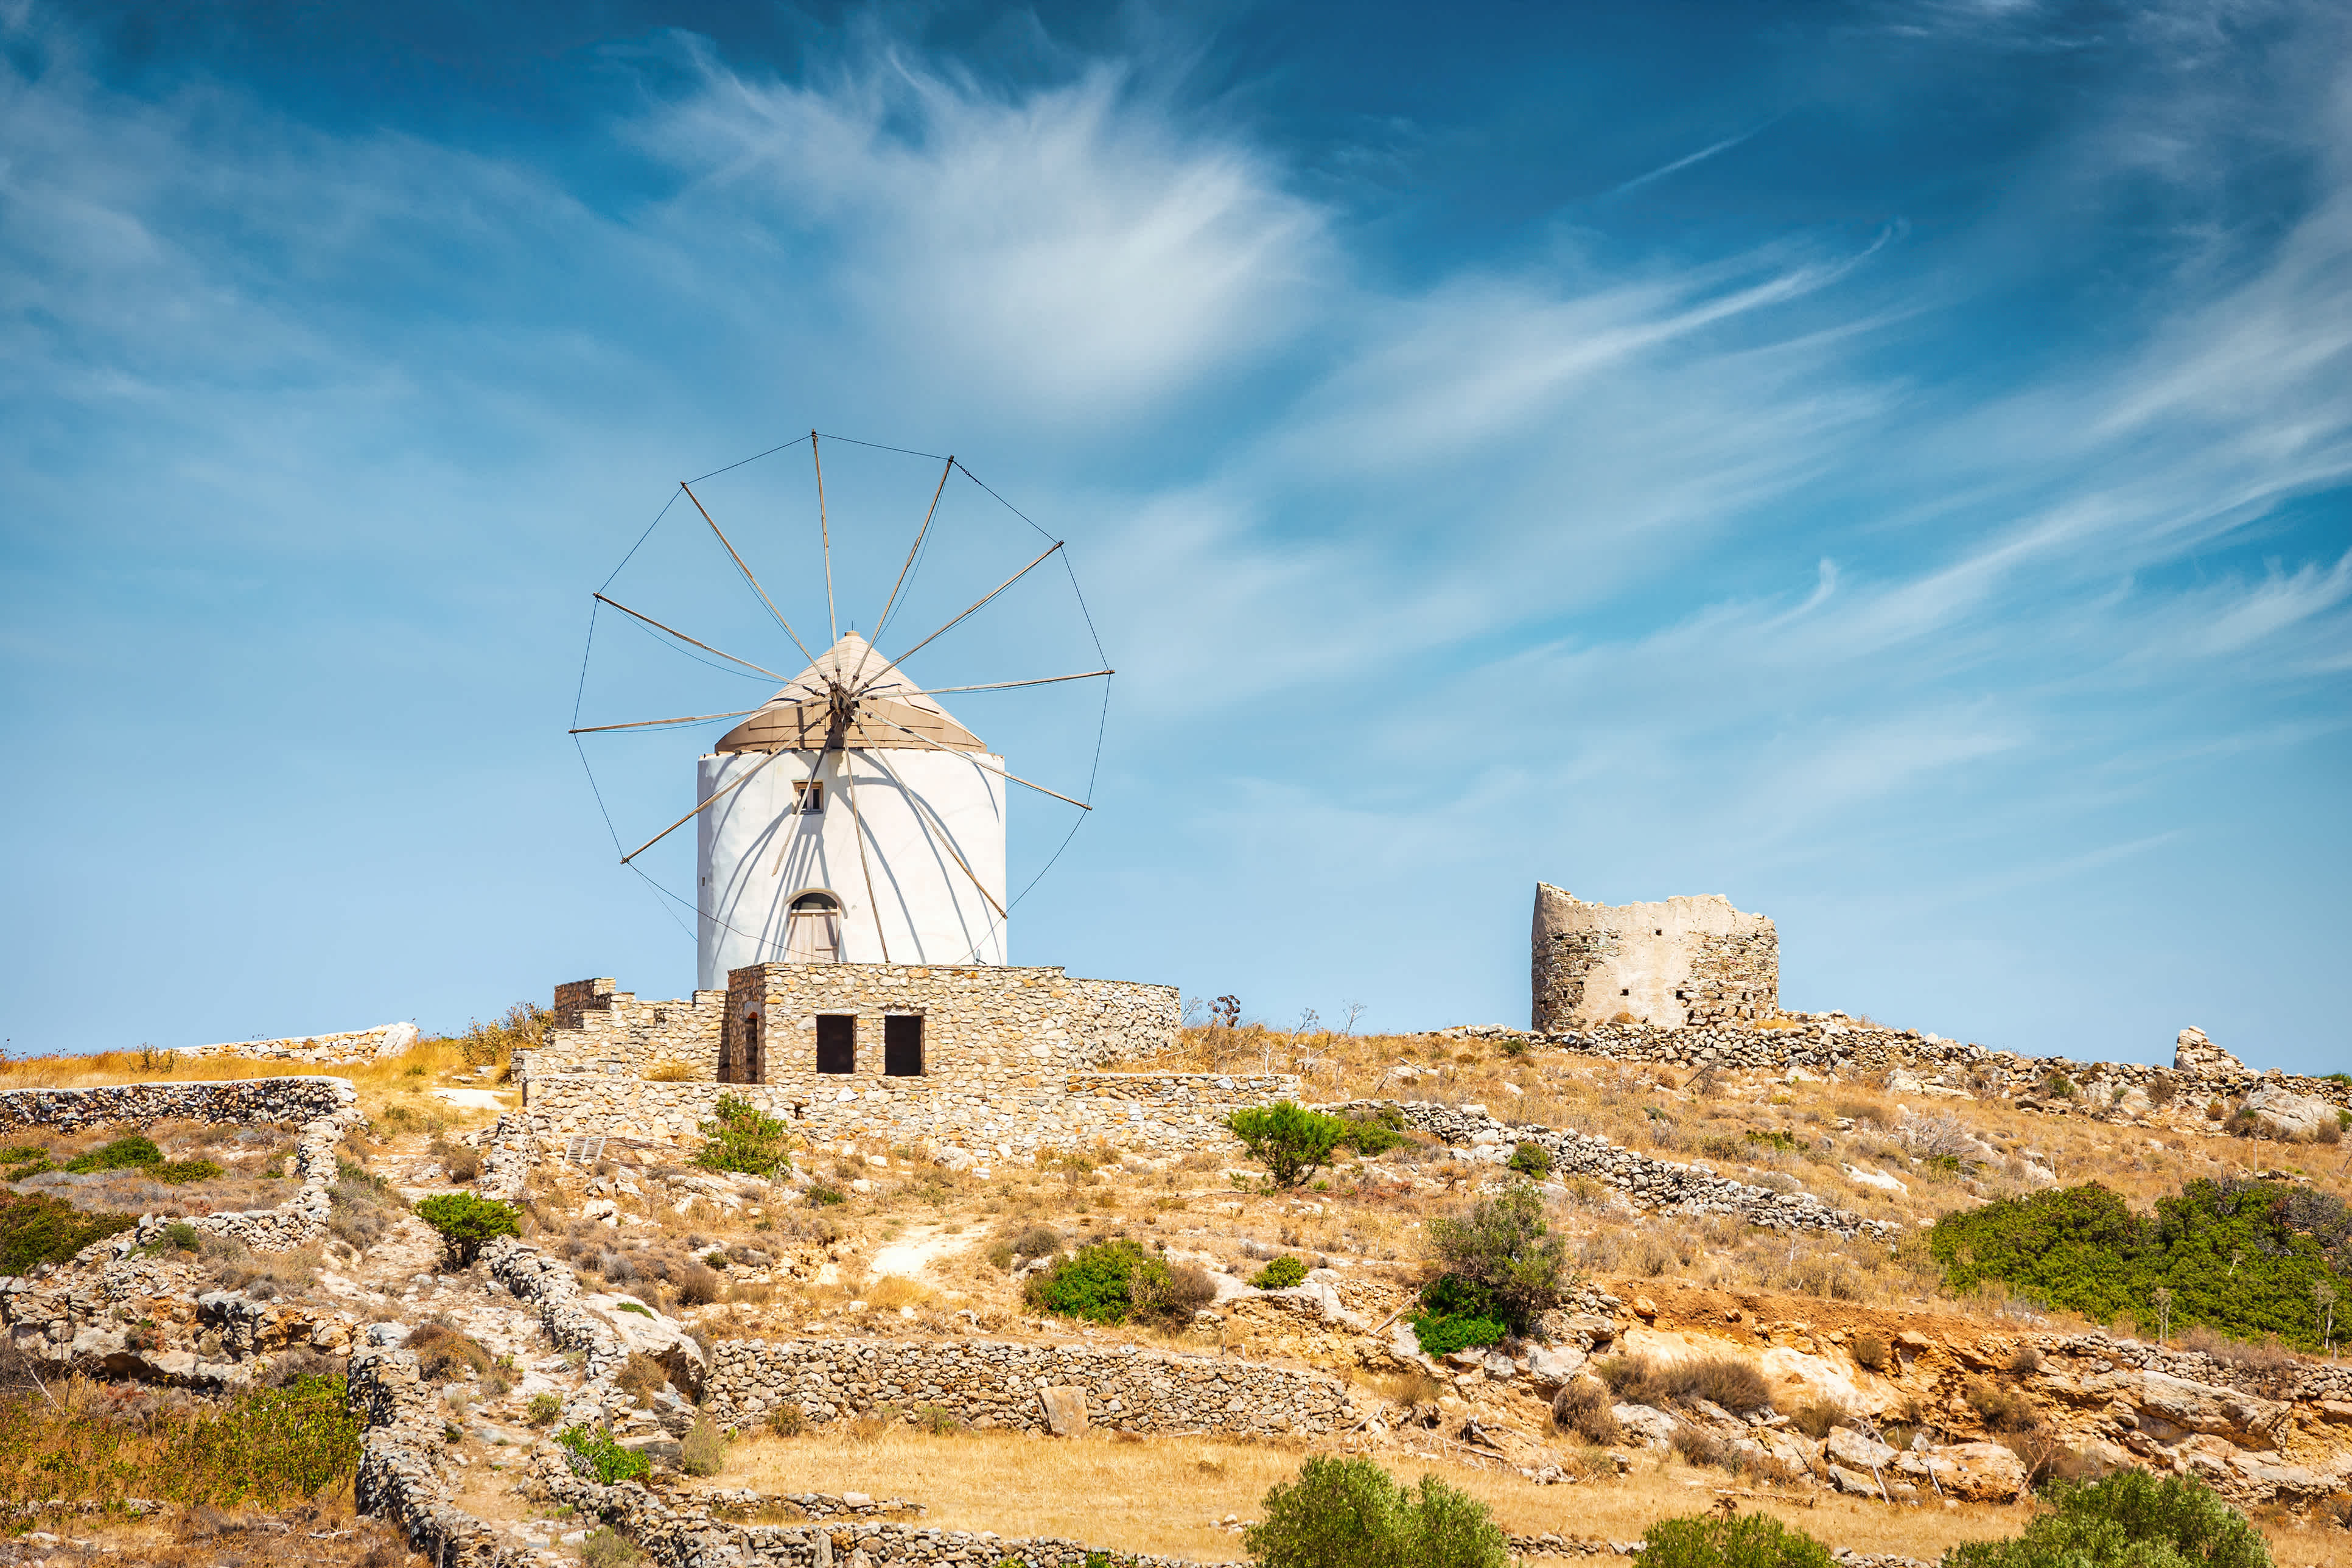 Pittoreske dorpjes met windmolens - te beleven tijdens een vakantie op Paros.